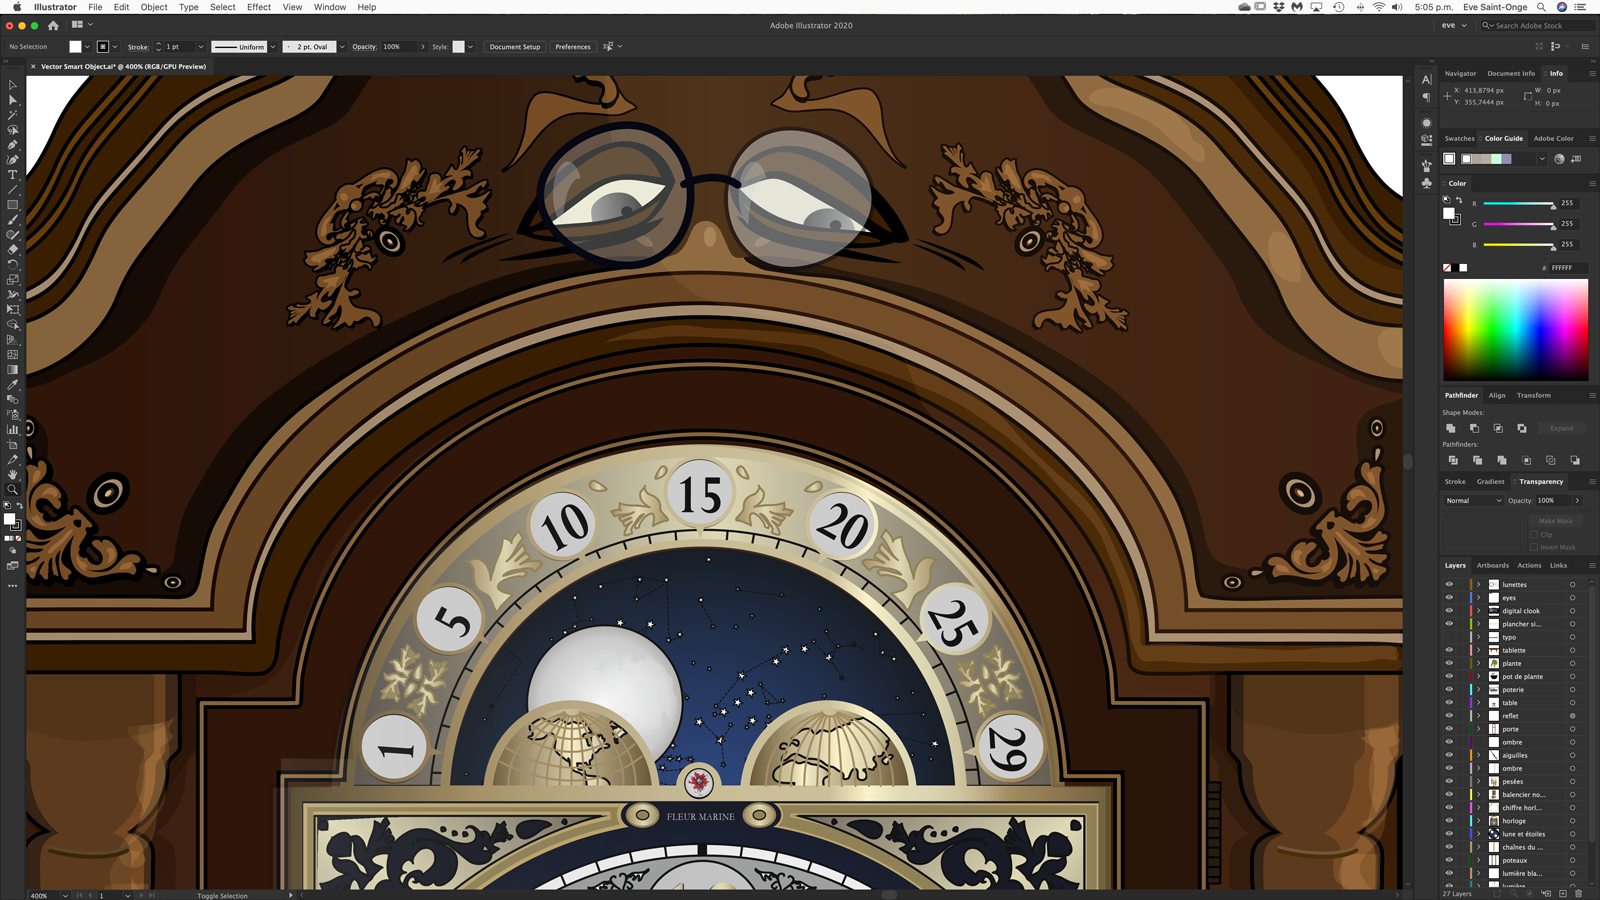 Détail de l'illustration du Choc des Générations de Fleur marine où on voit le haut de l'horloge Grand-Père ses yeux et le calendrier lunaire dans Photoshop